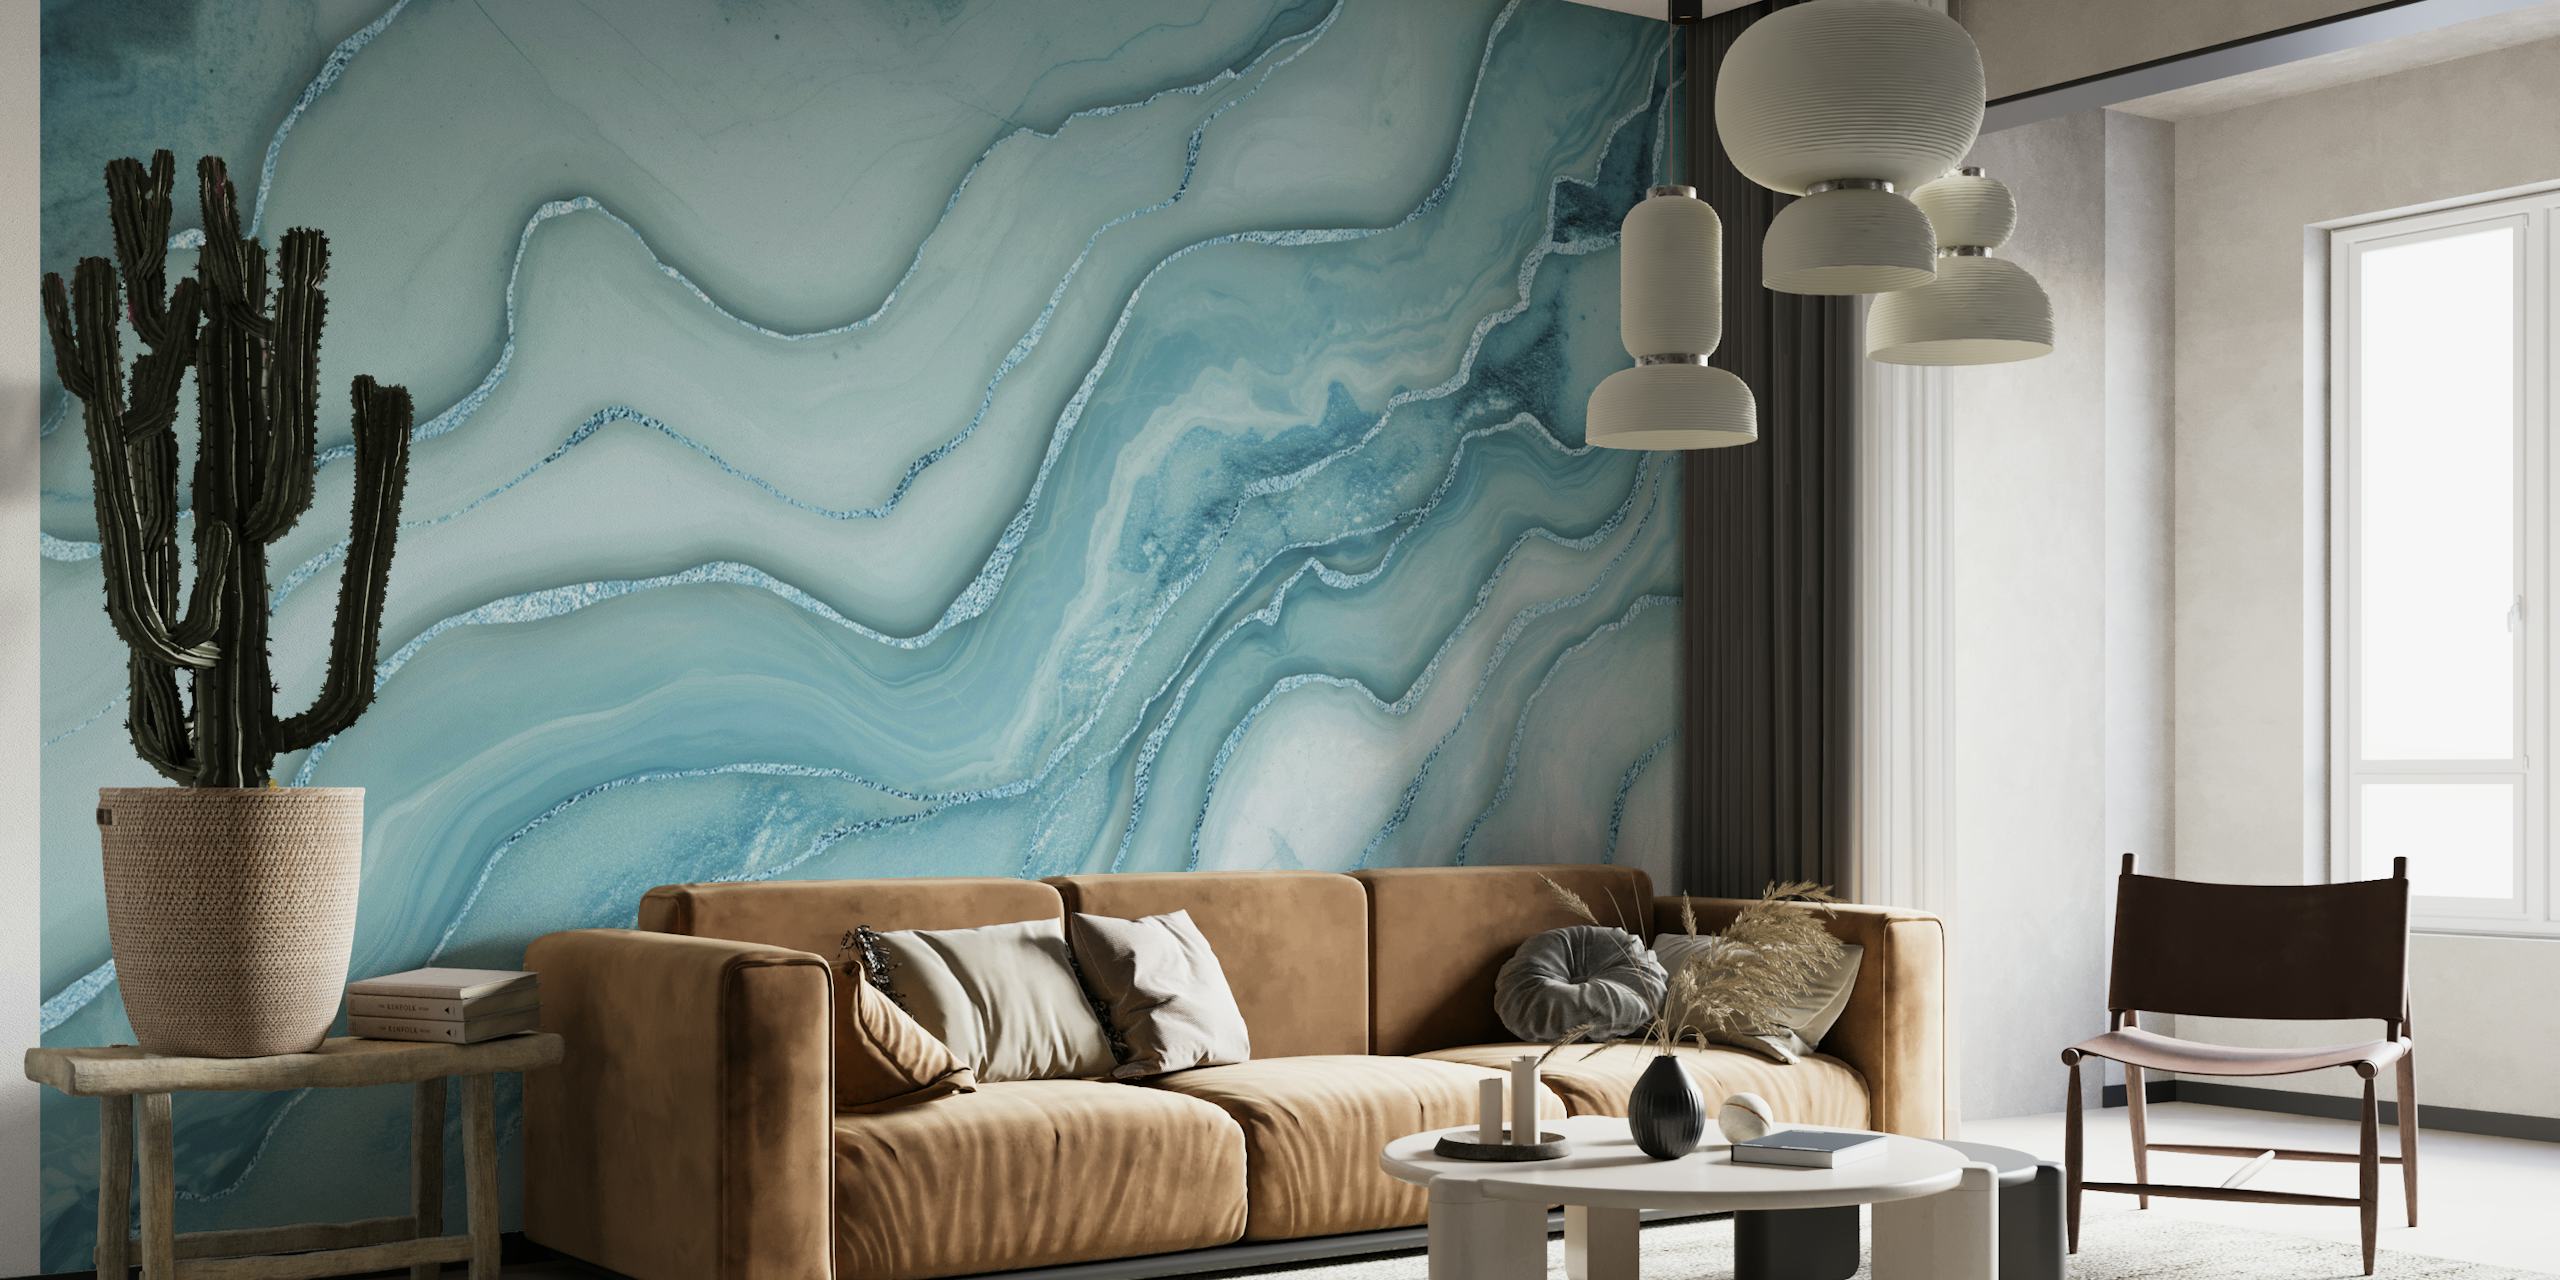 Mural de parede com padrão de mármore azul água e detalhes em cinza, criando uma atmosfera luxuosa e serena.